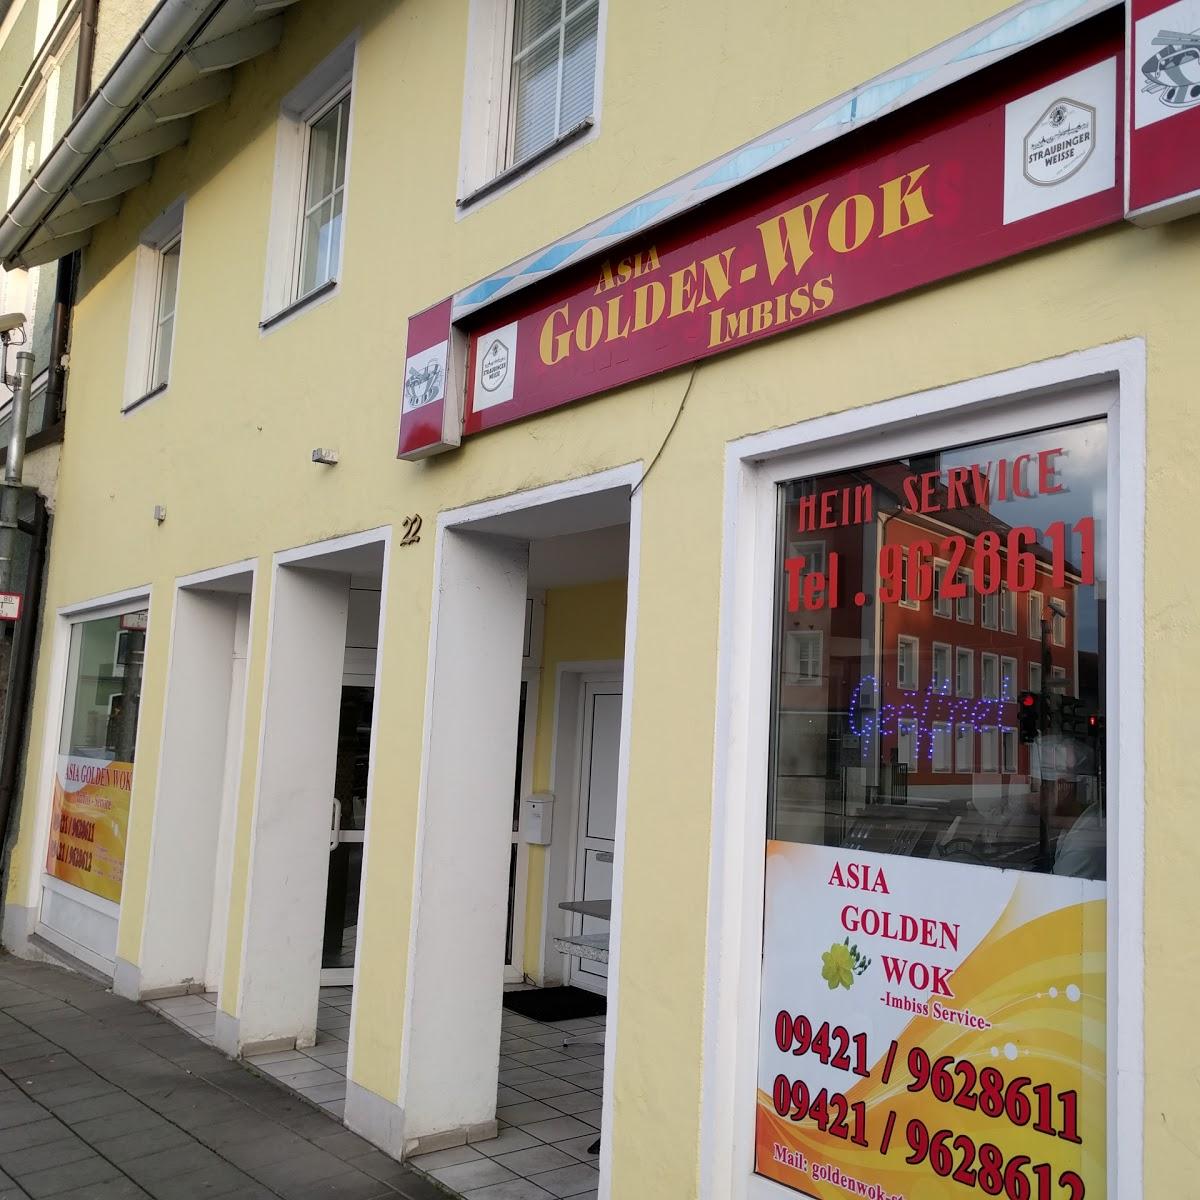 Restaurant "Asia Golden Wok" in Straubing